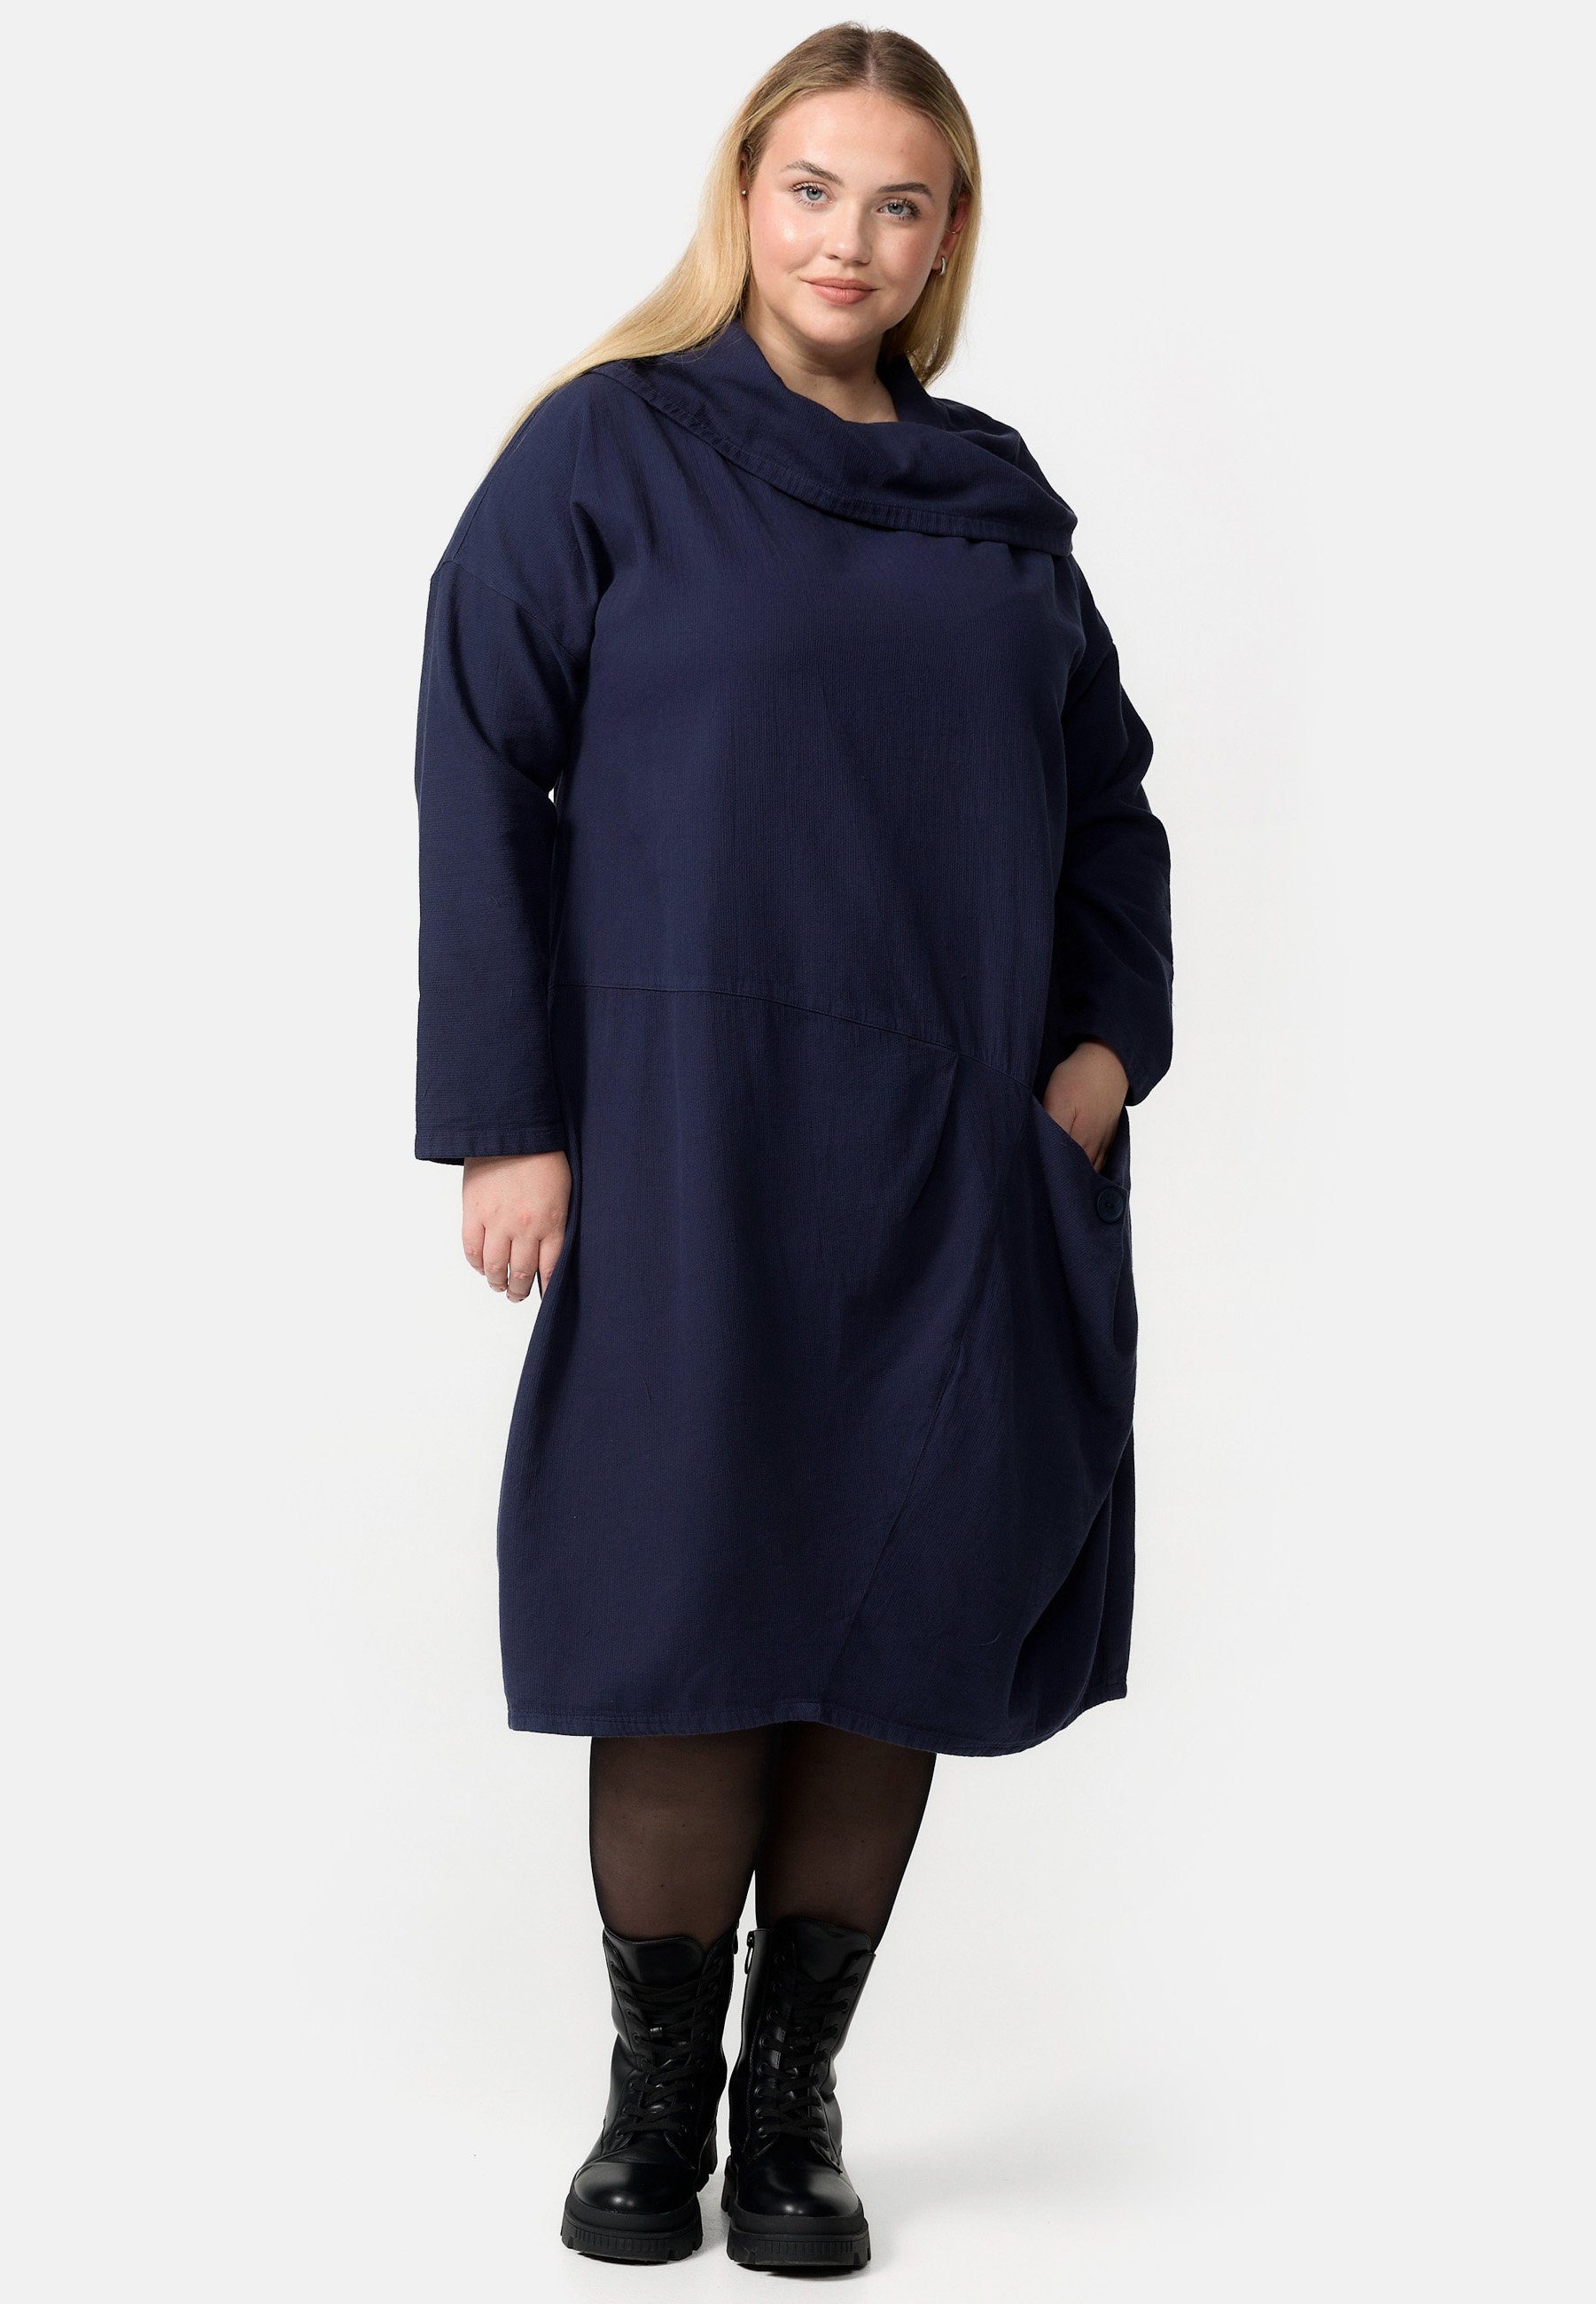 in Kekoo 'Sienna' aus A-Linie Cord-Kleid A-Linien-Kleid Navy Baumwolle 100%